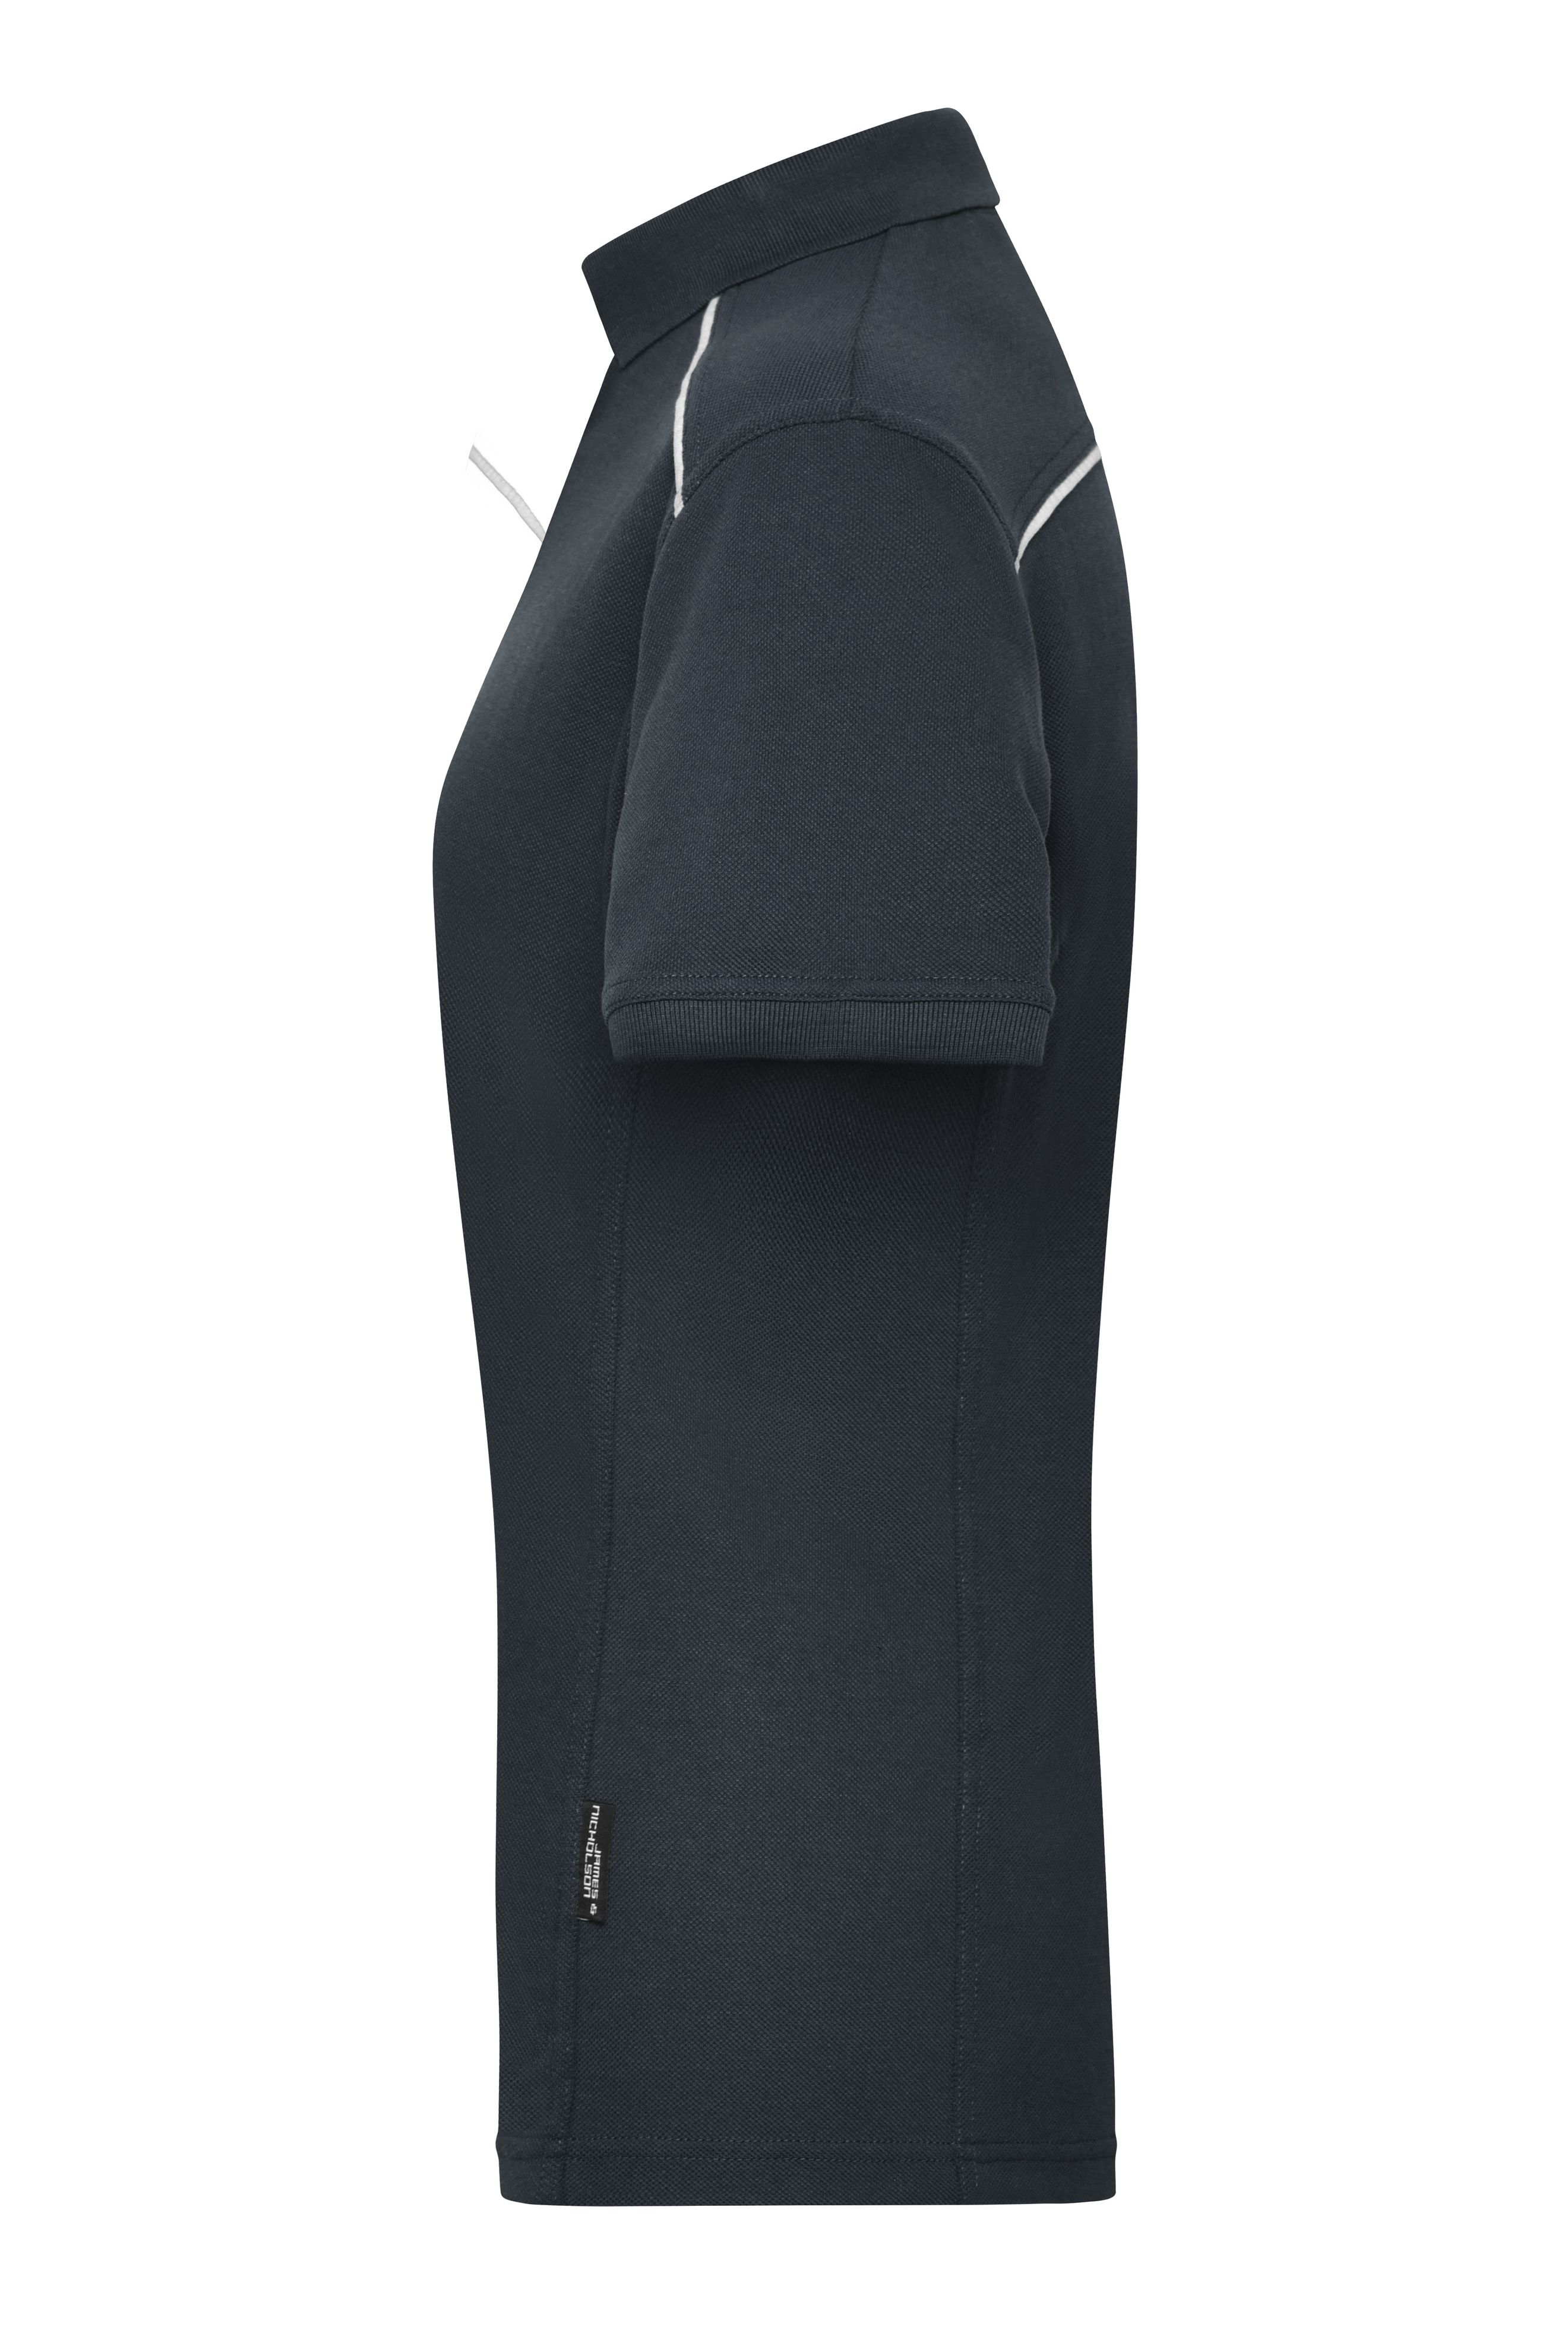 Ladies' Workwear Polo - SOLID - JN891 Strapazierfähiges und pflegeleichtes Polo mit Kontrastpaspel